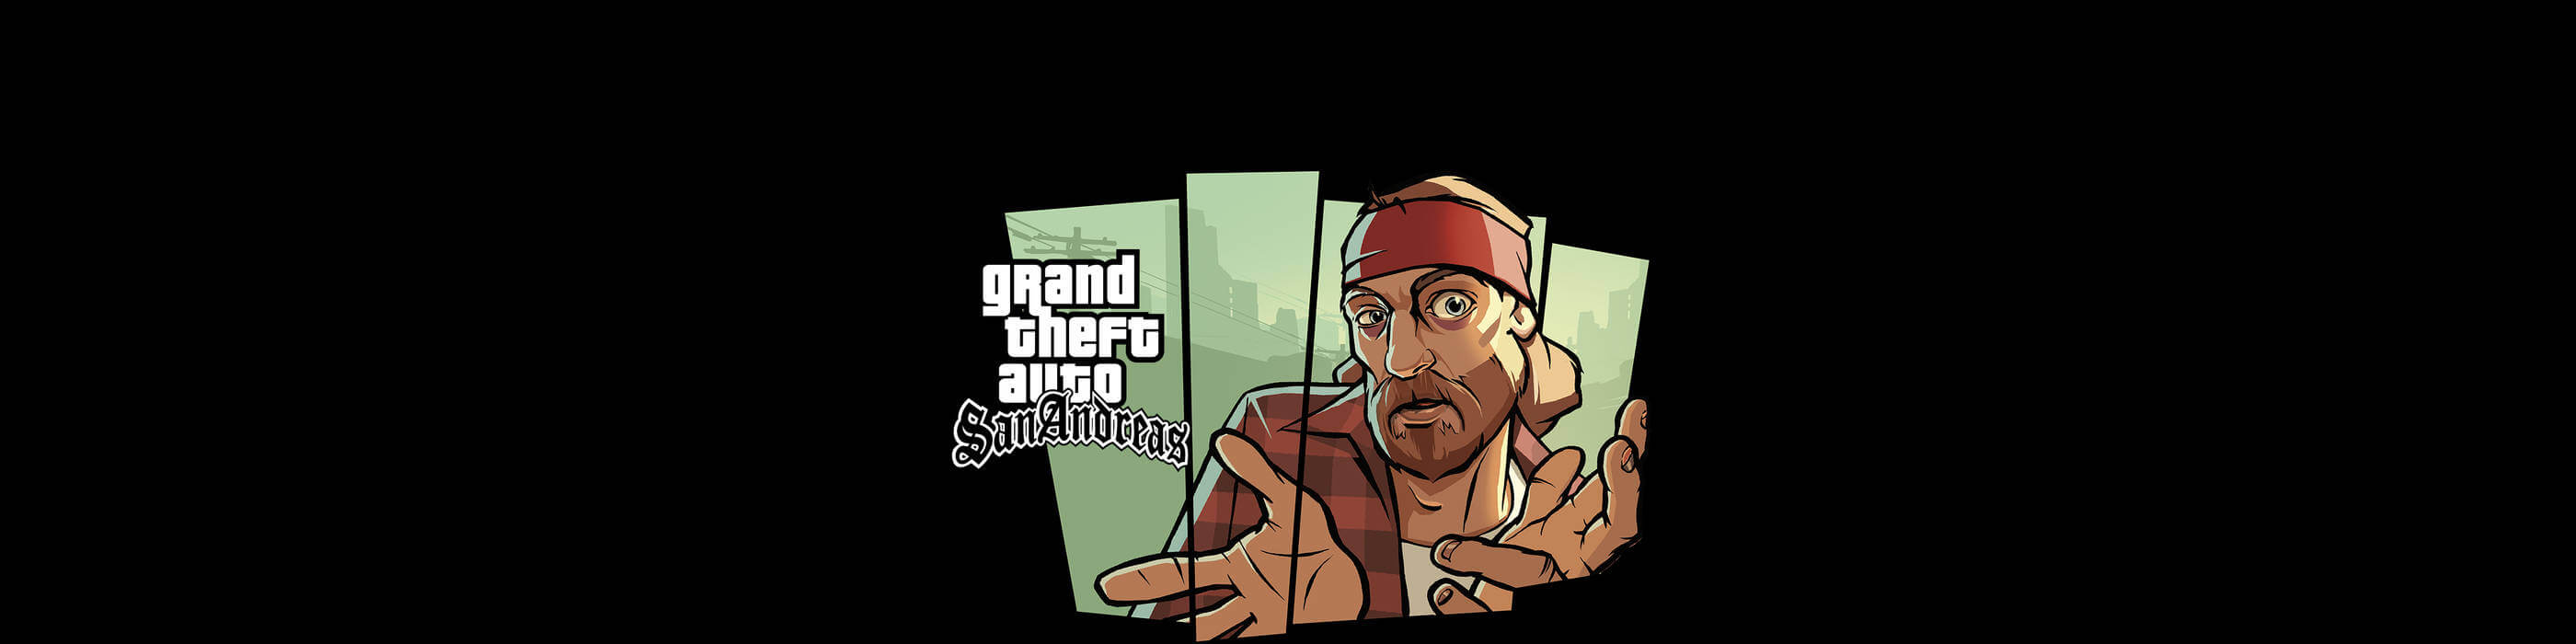 [已购]Grand Theft Auto: San Andreas-草蜢资源